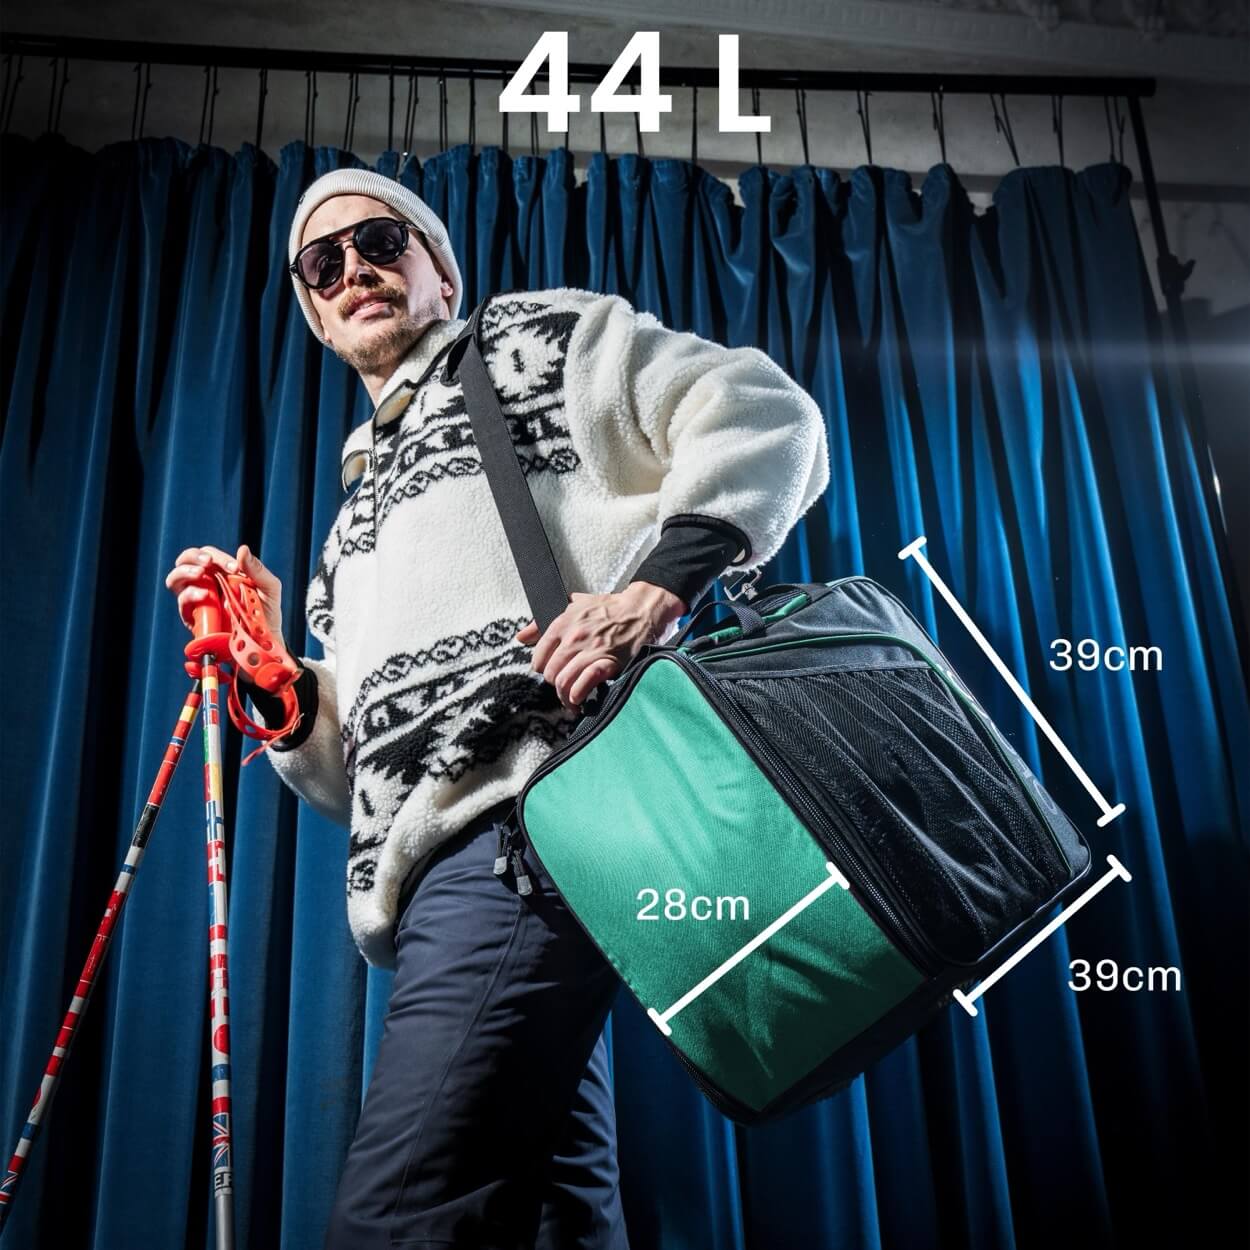 Paar-Bundle: 2x Skischuhtasche zum Umhängen | CLASSIC 44L